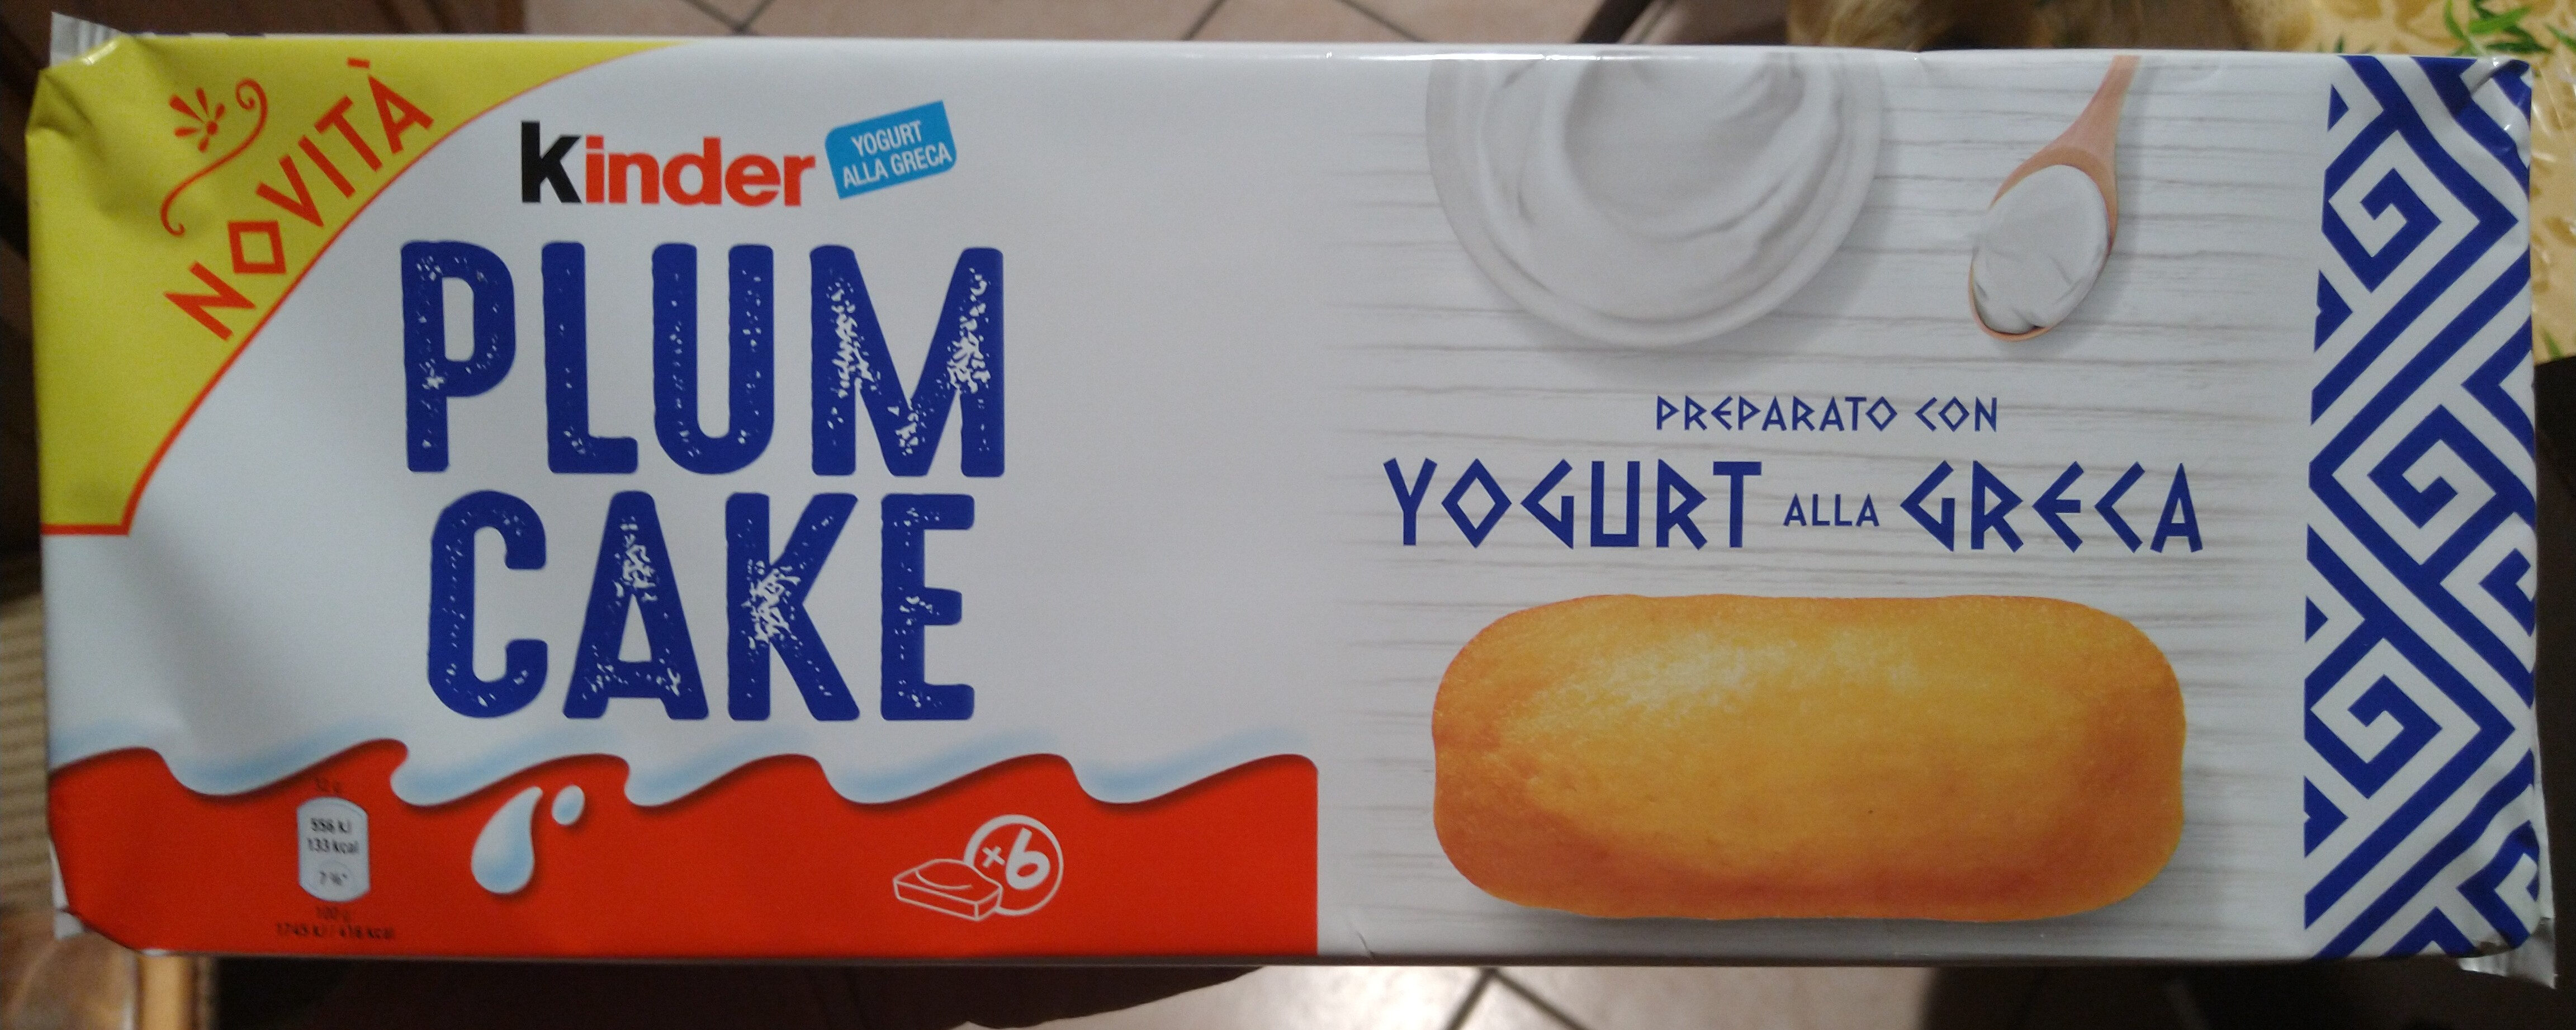 Plum cake preparato con yogurt alla greca - Prodotto